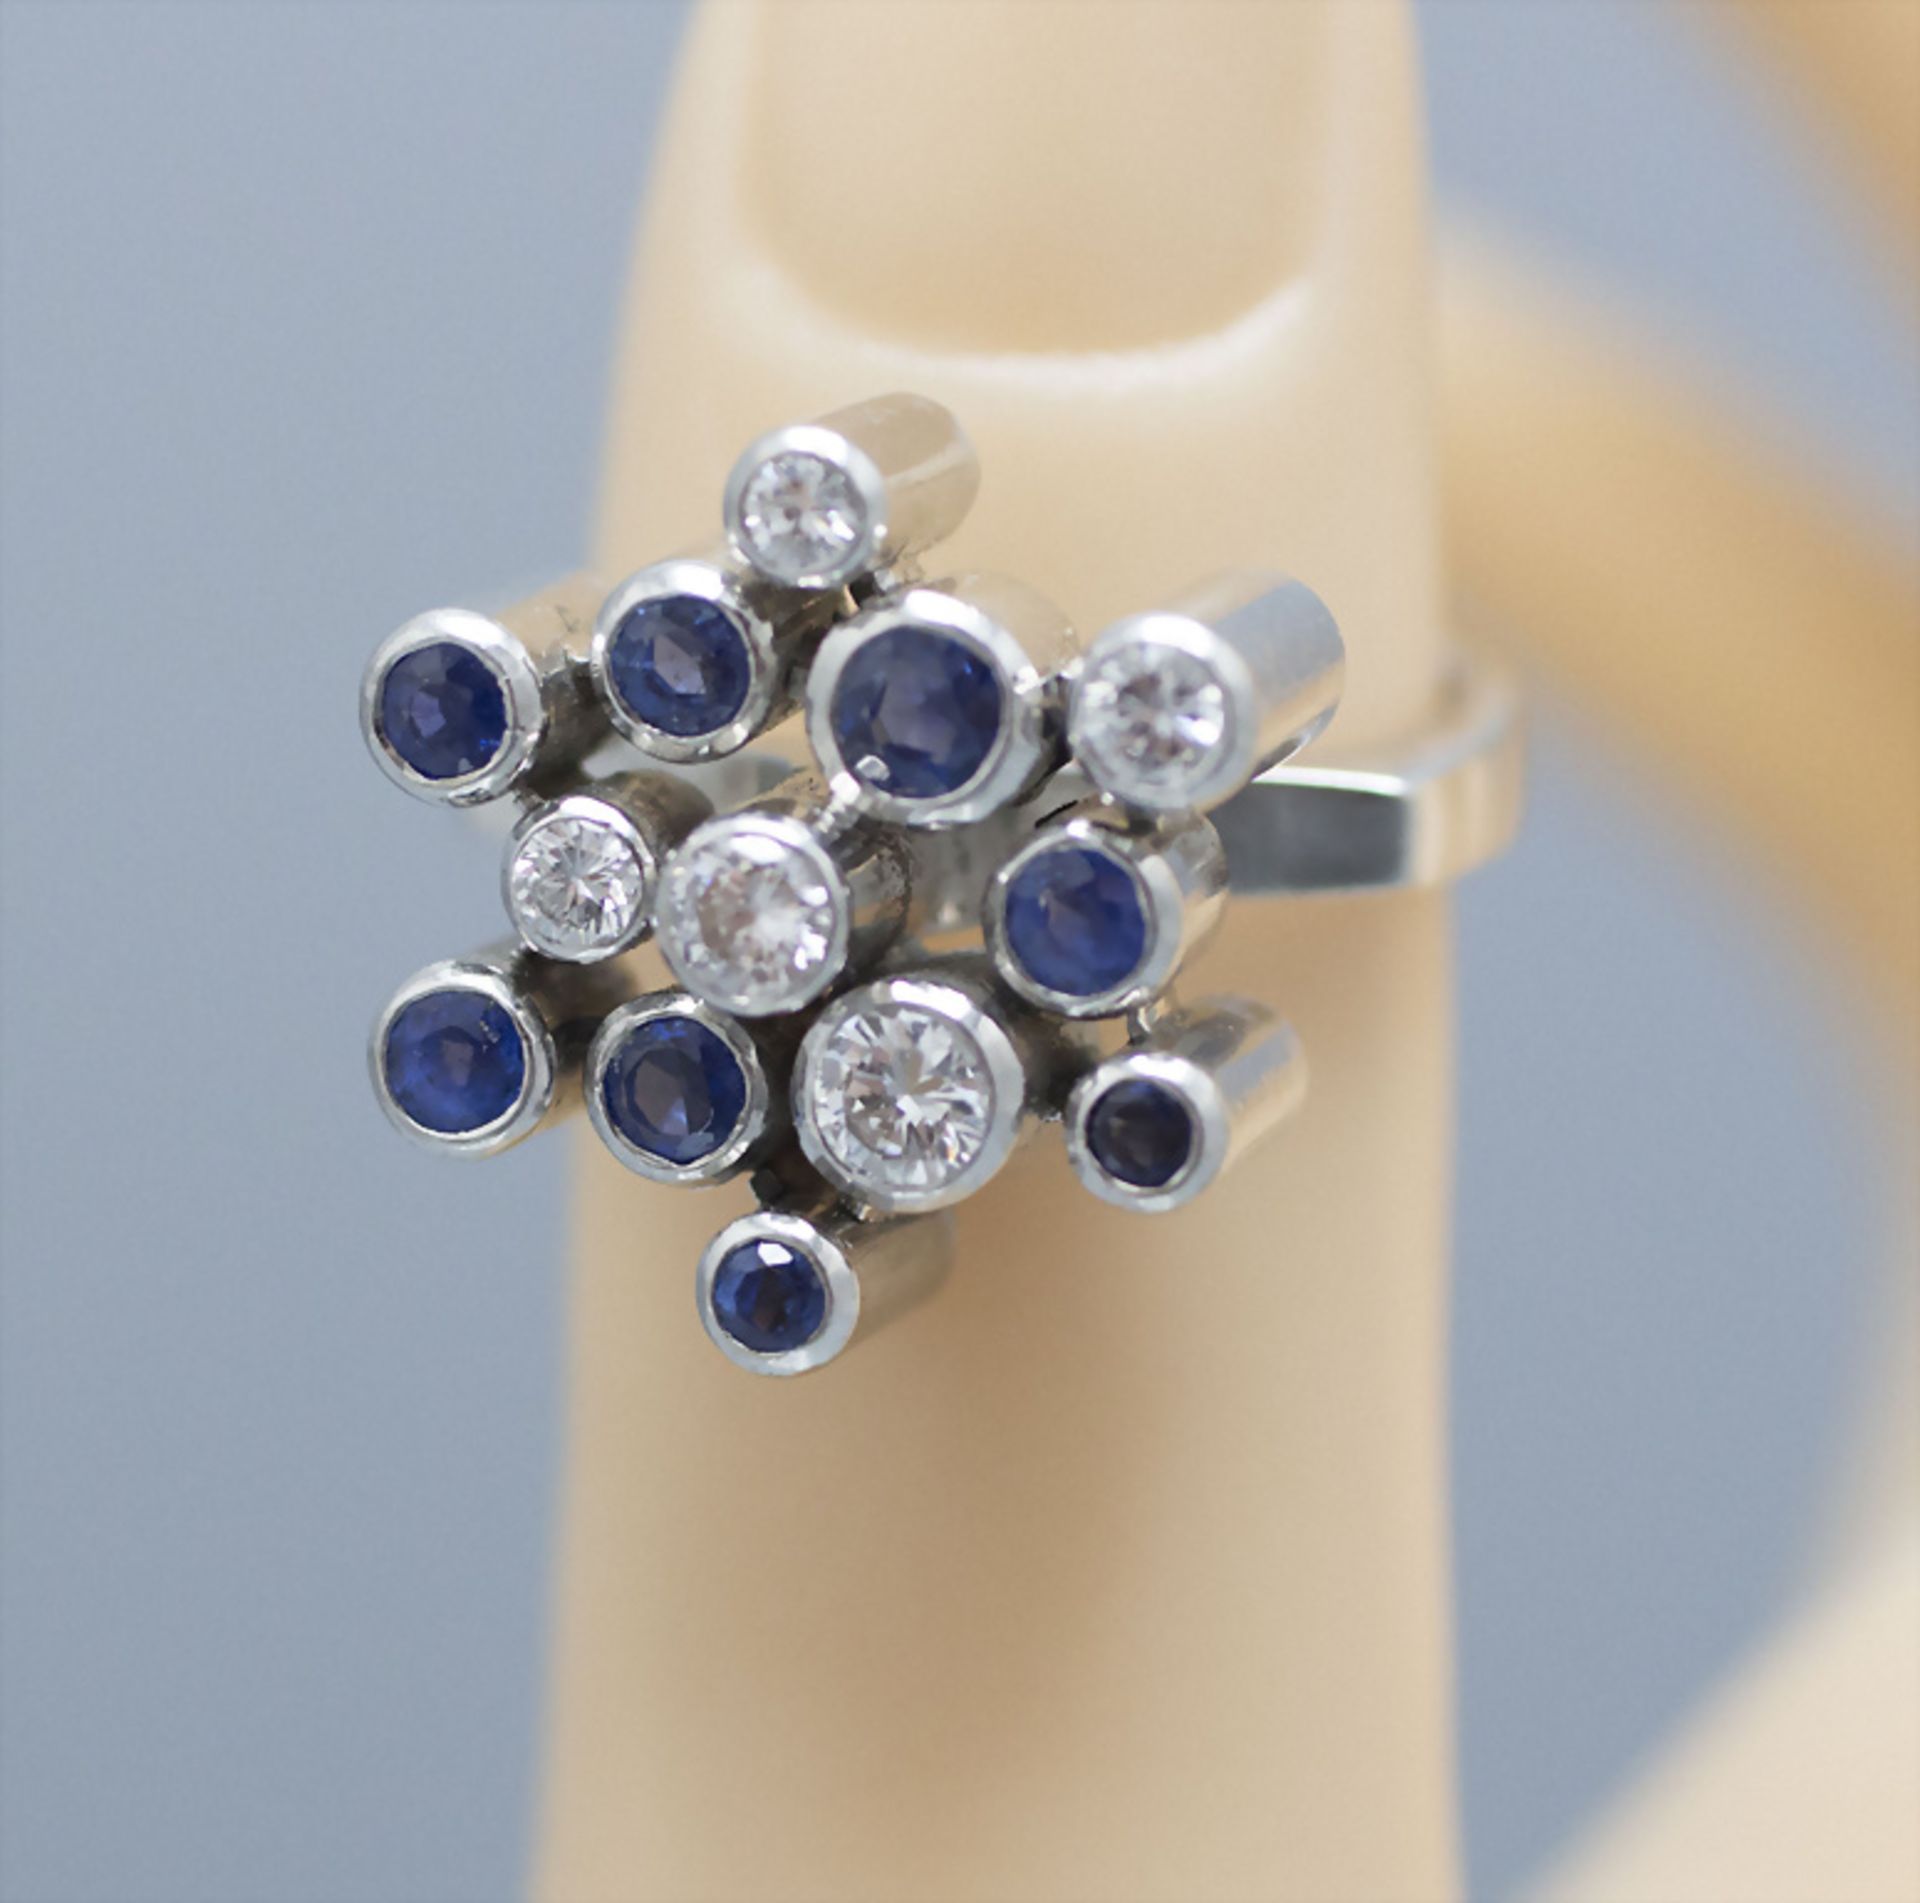 Damenring mit Saphiren und Brillanten / A ladies 18 ct white gold ring with sapphires and diamonds - Bild 2 aus 4